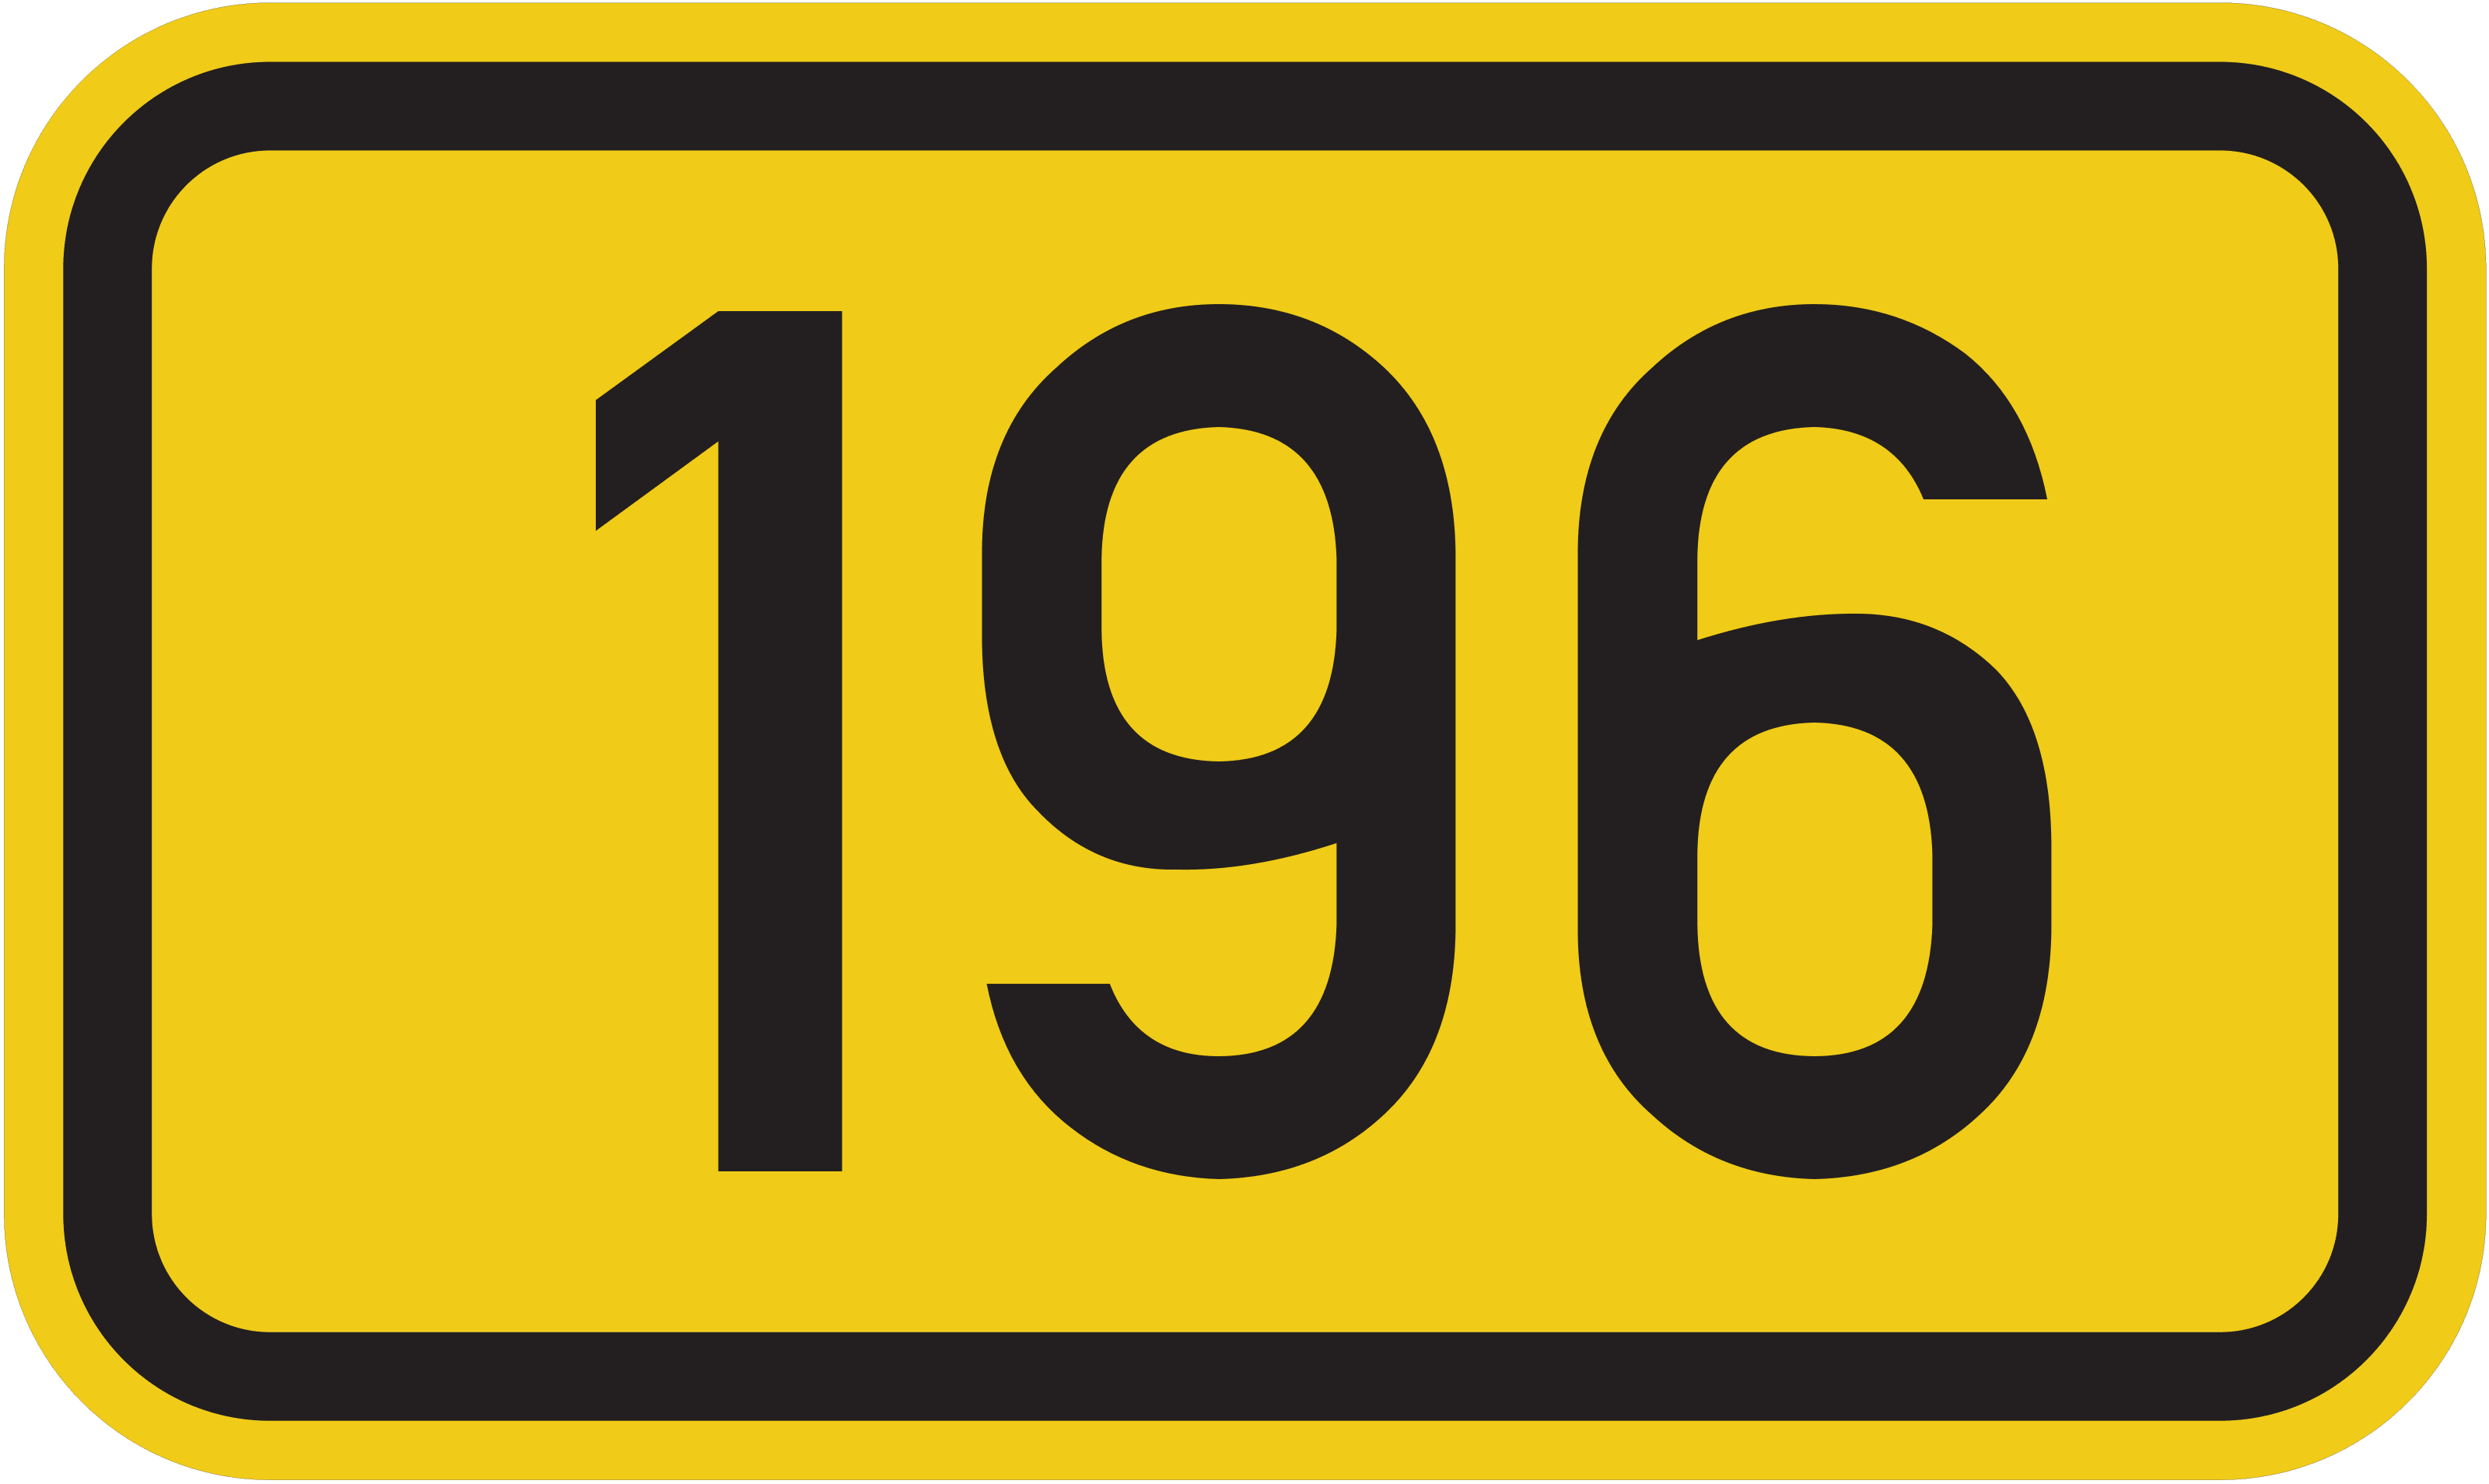 Bundesstraße B 196